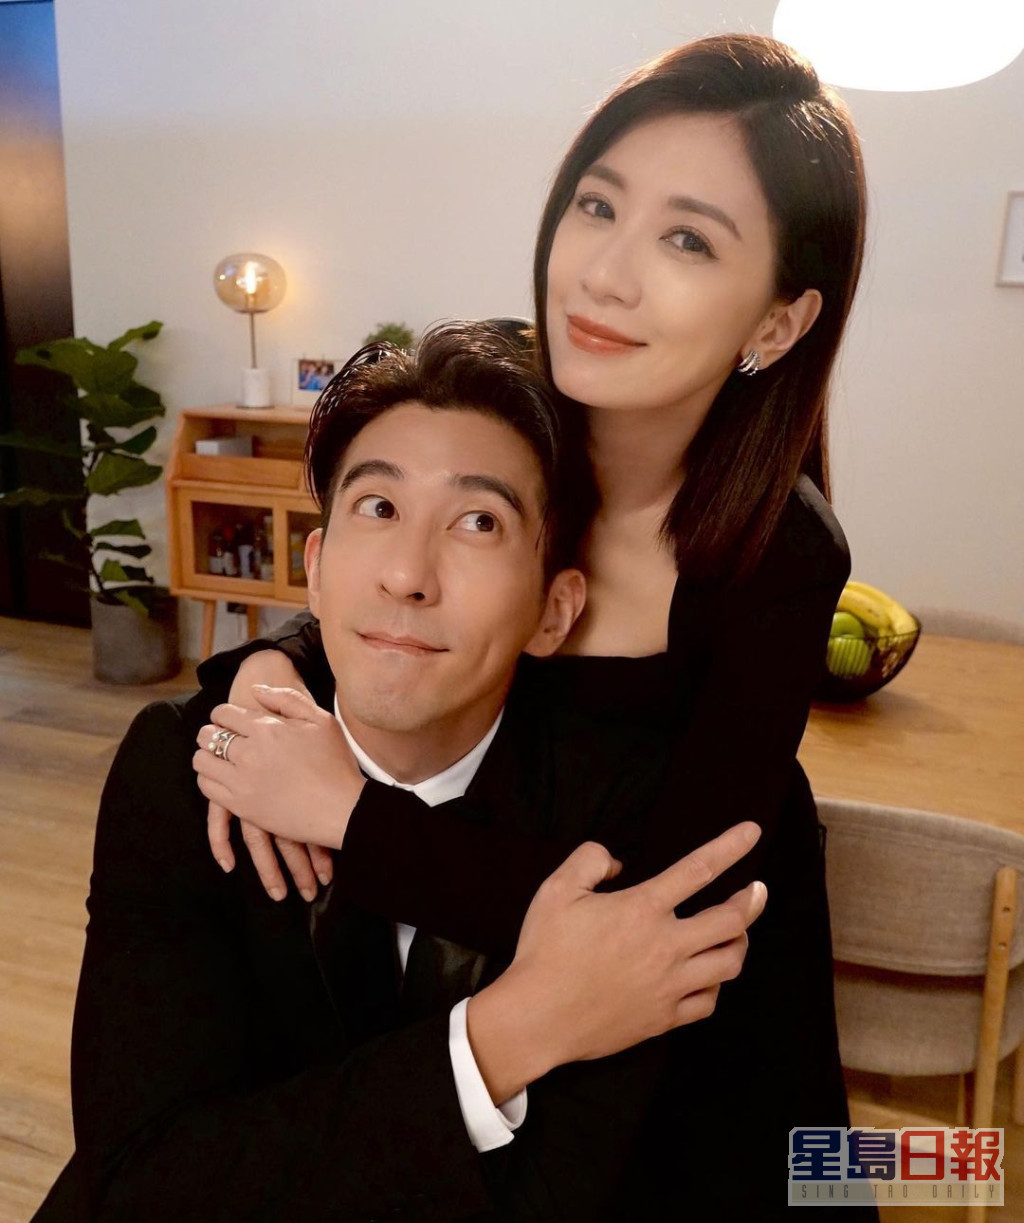 賈靜雯於2015年嫁男星修杰楷。